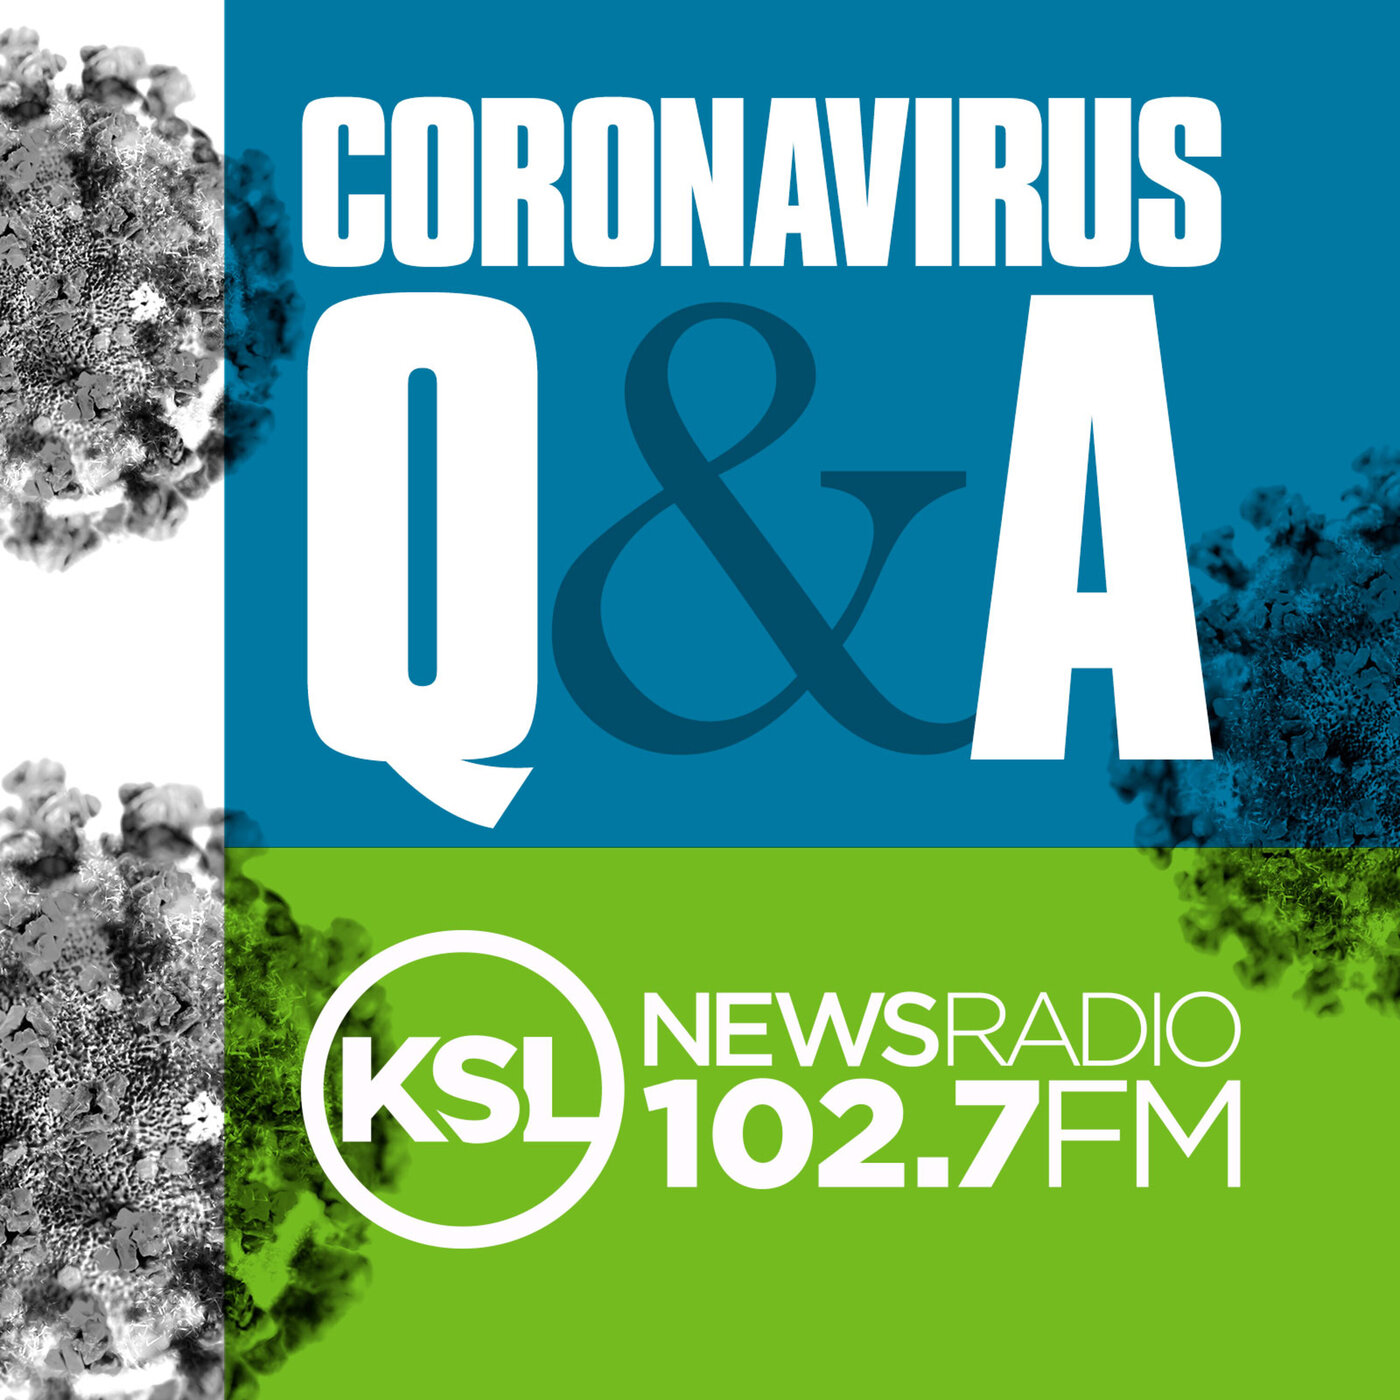 Coronavirus Update December 1st. 